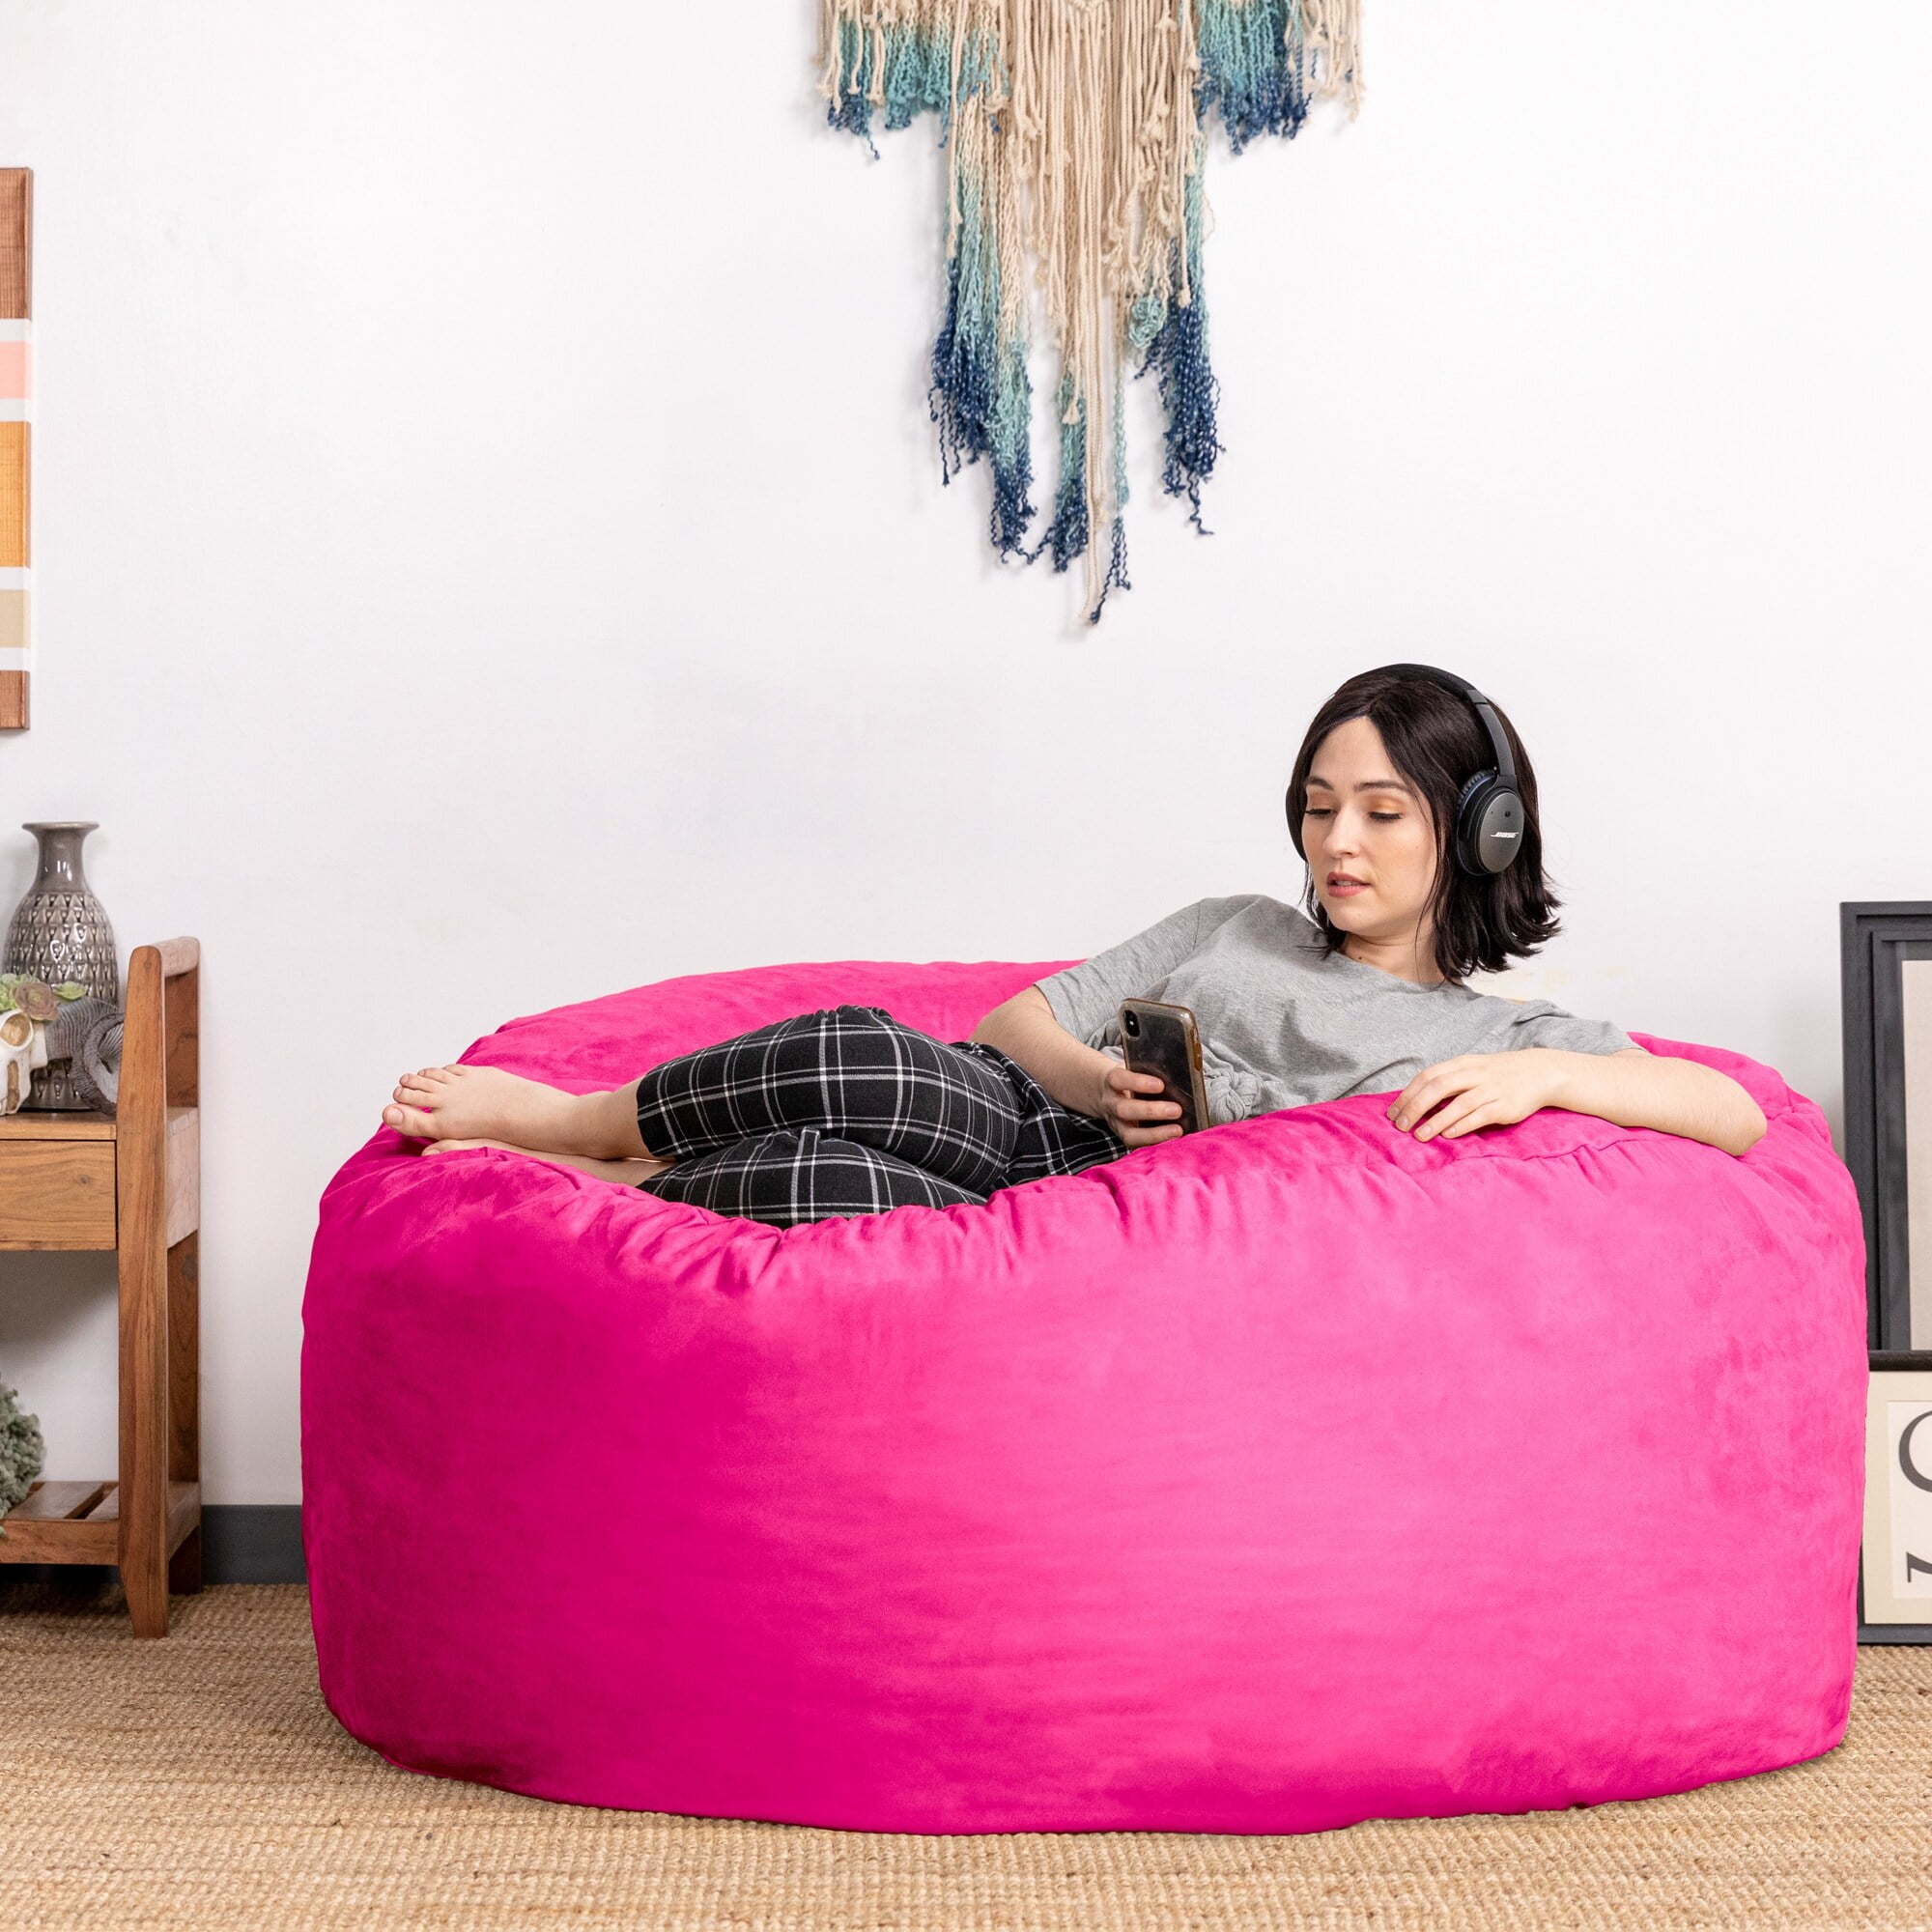 Search - Fuzzy Fur Hot Pink Bean Bag Chair FF HTPK | Bean bag chair,  Bedroom bean bags, Pink bean bag